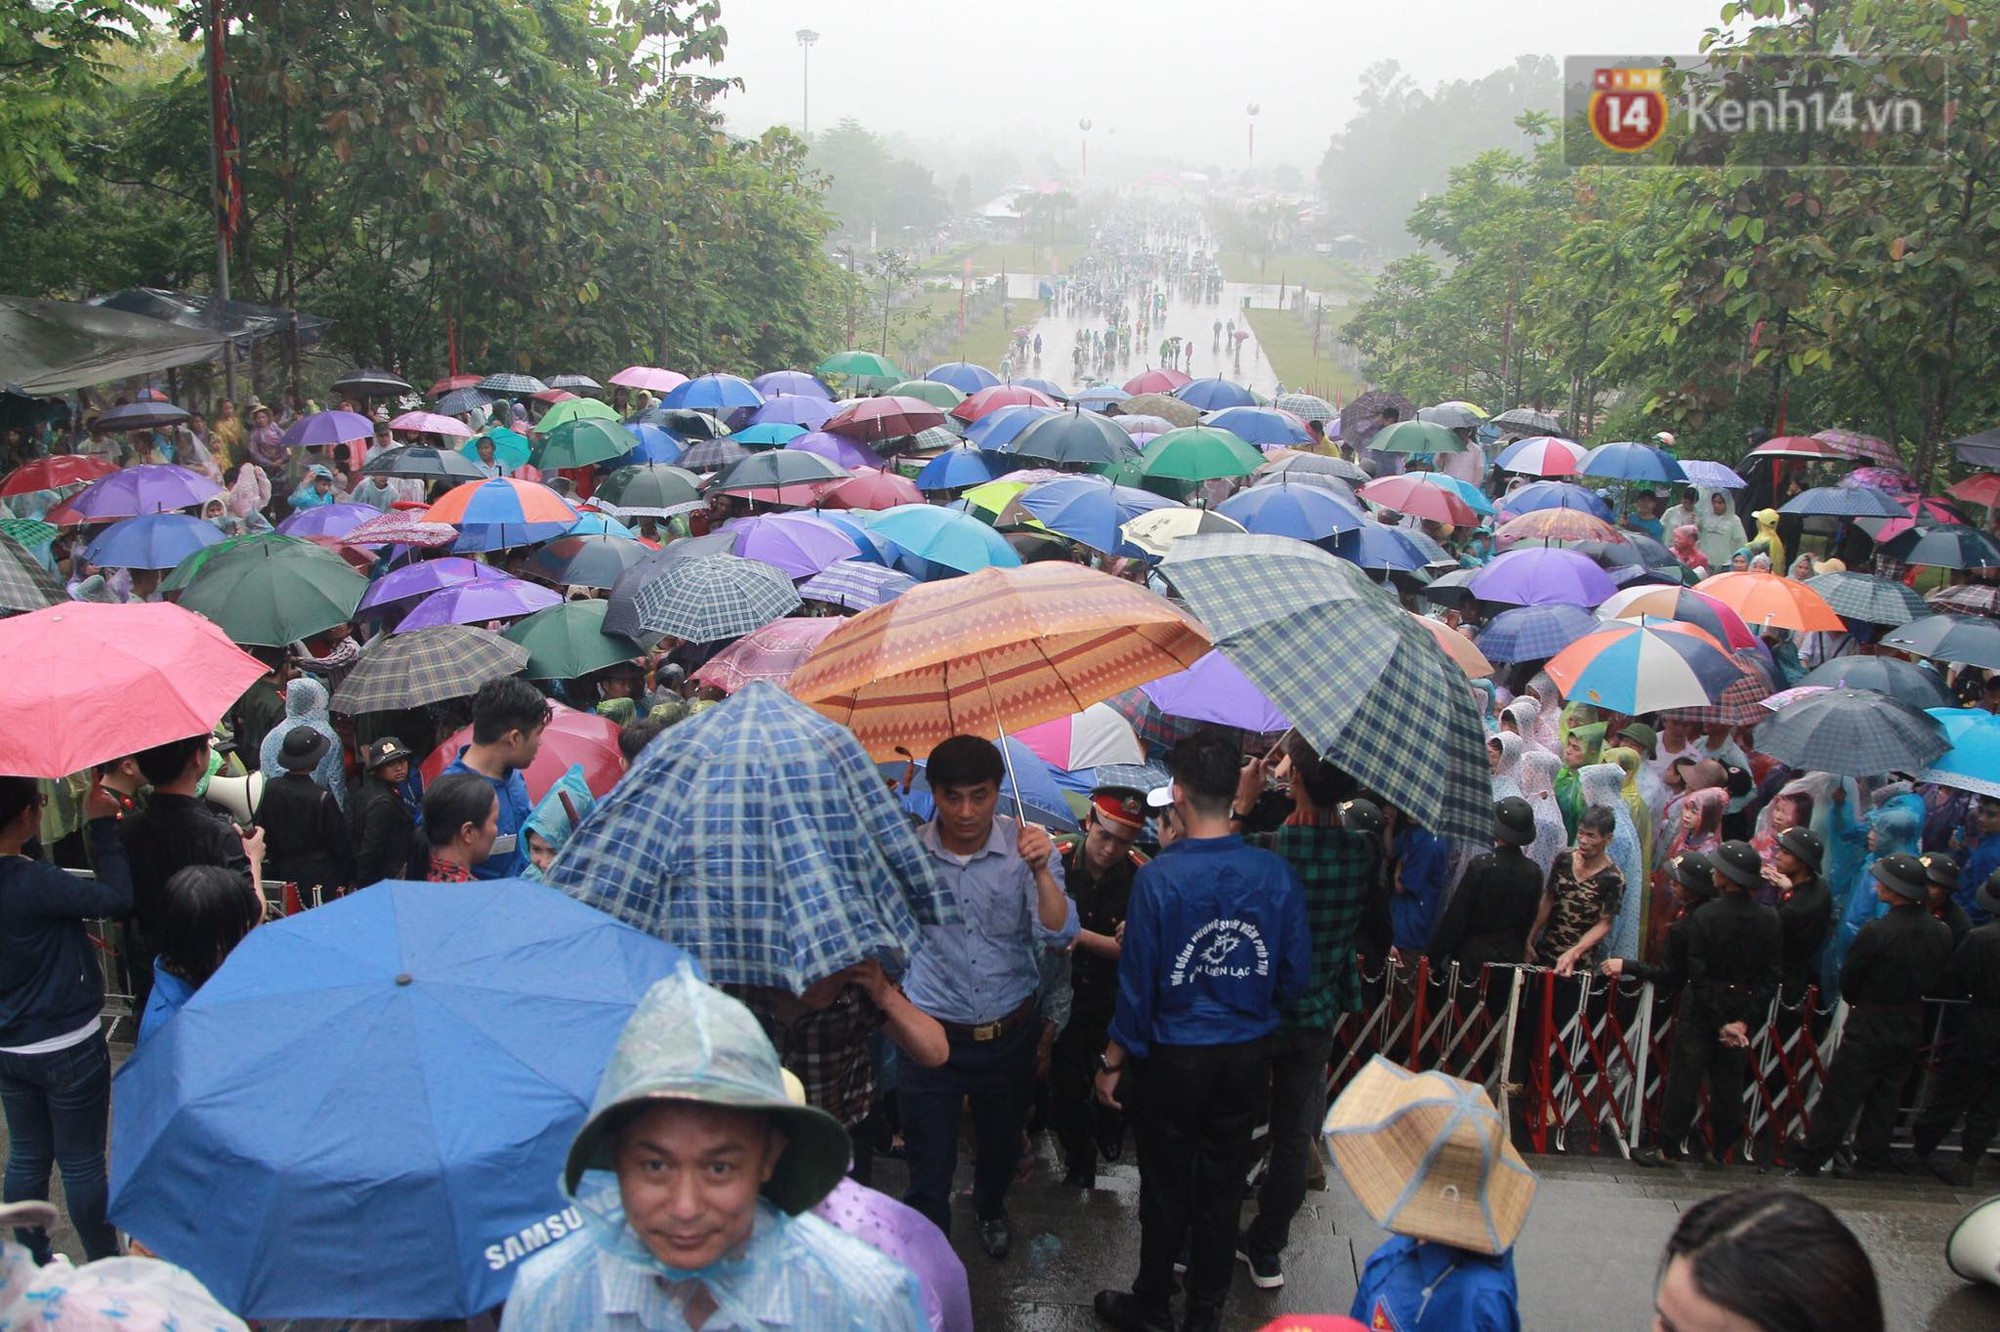 Hàng vạn người dân che ô đi khai hội Đền Hùng, hàng rào sống đứng dưới mưa đảm bảo trật tự cho lễ hội - Ảnh 4.